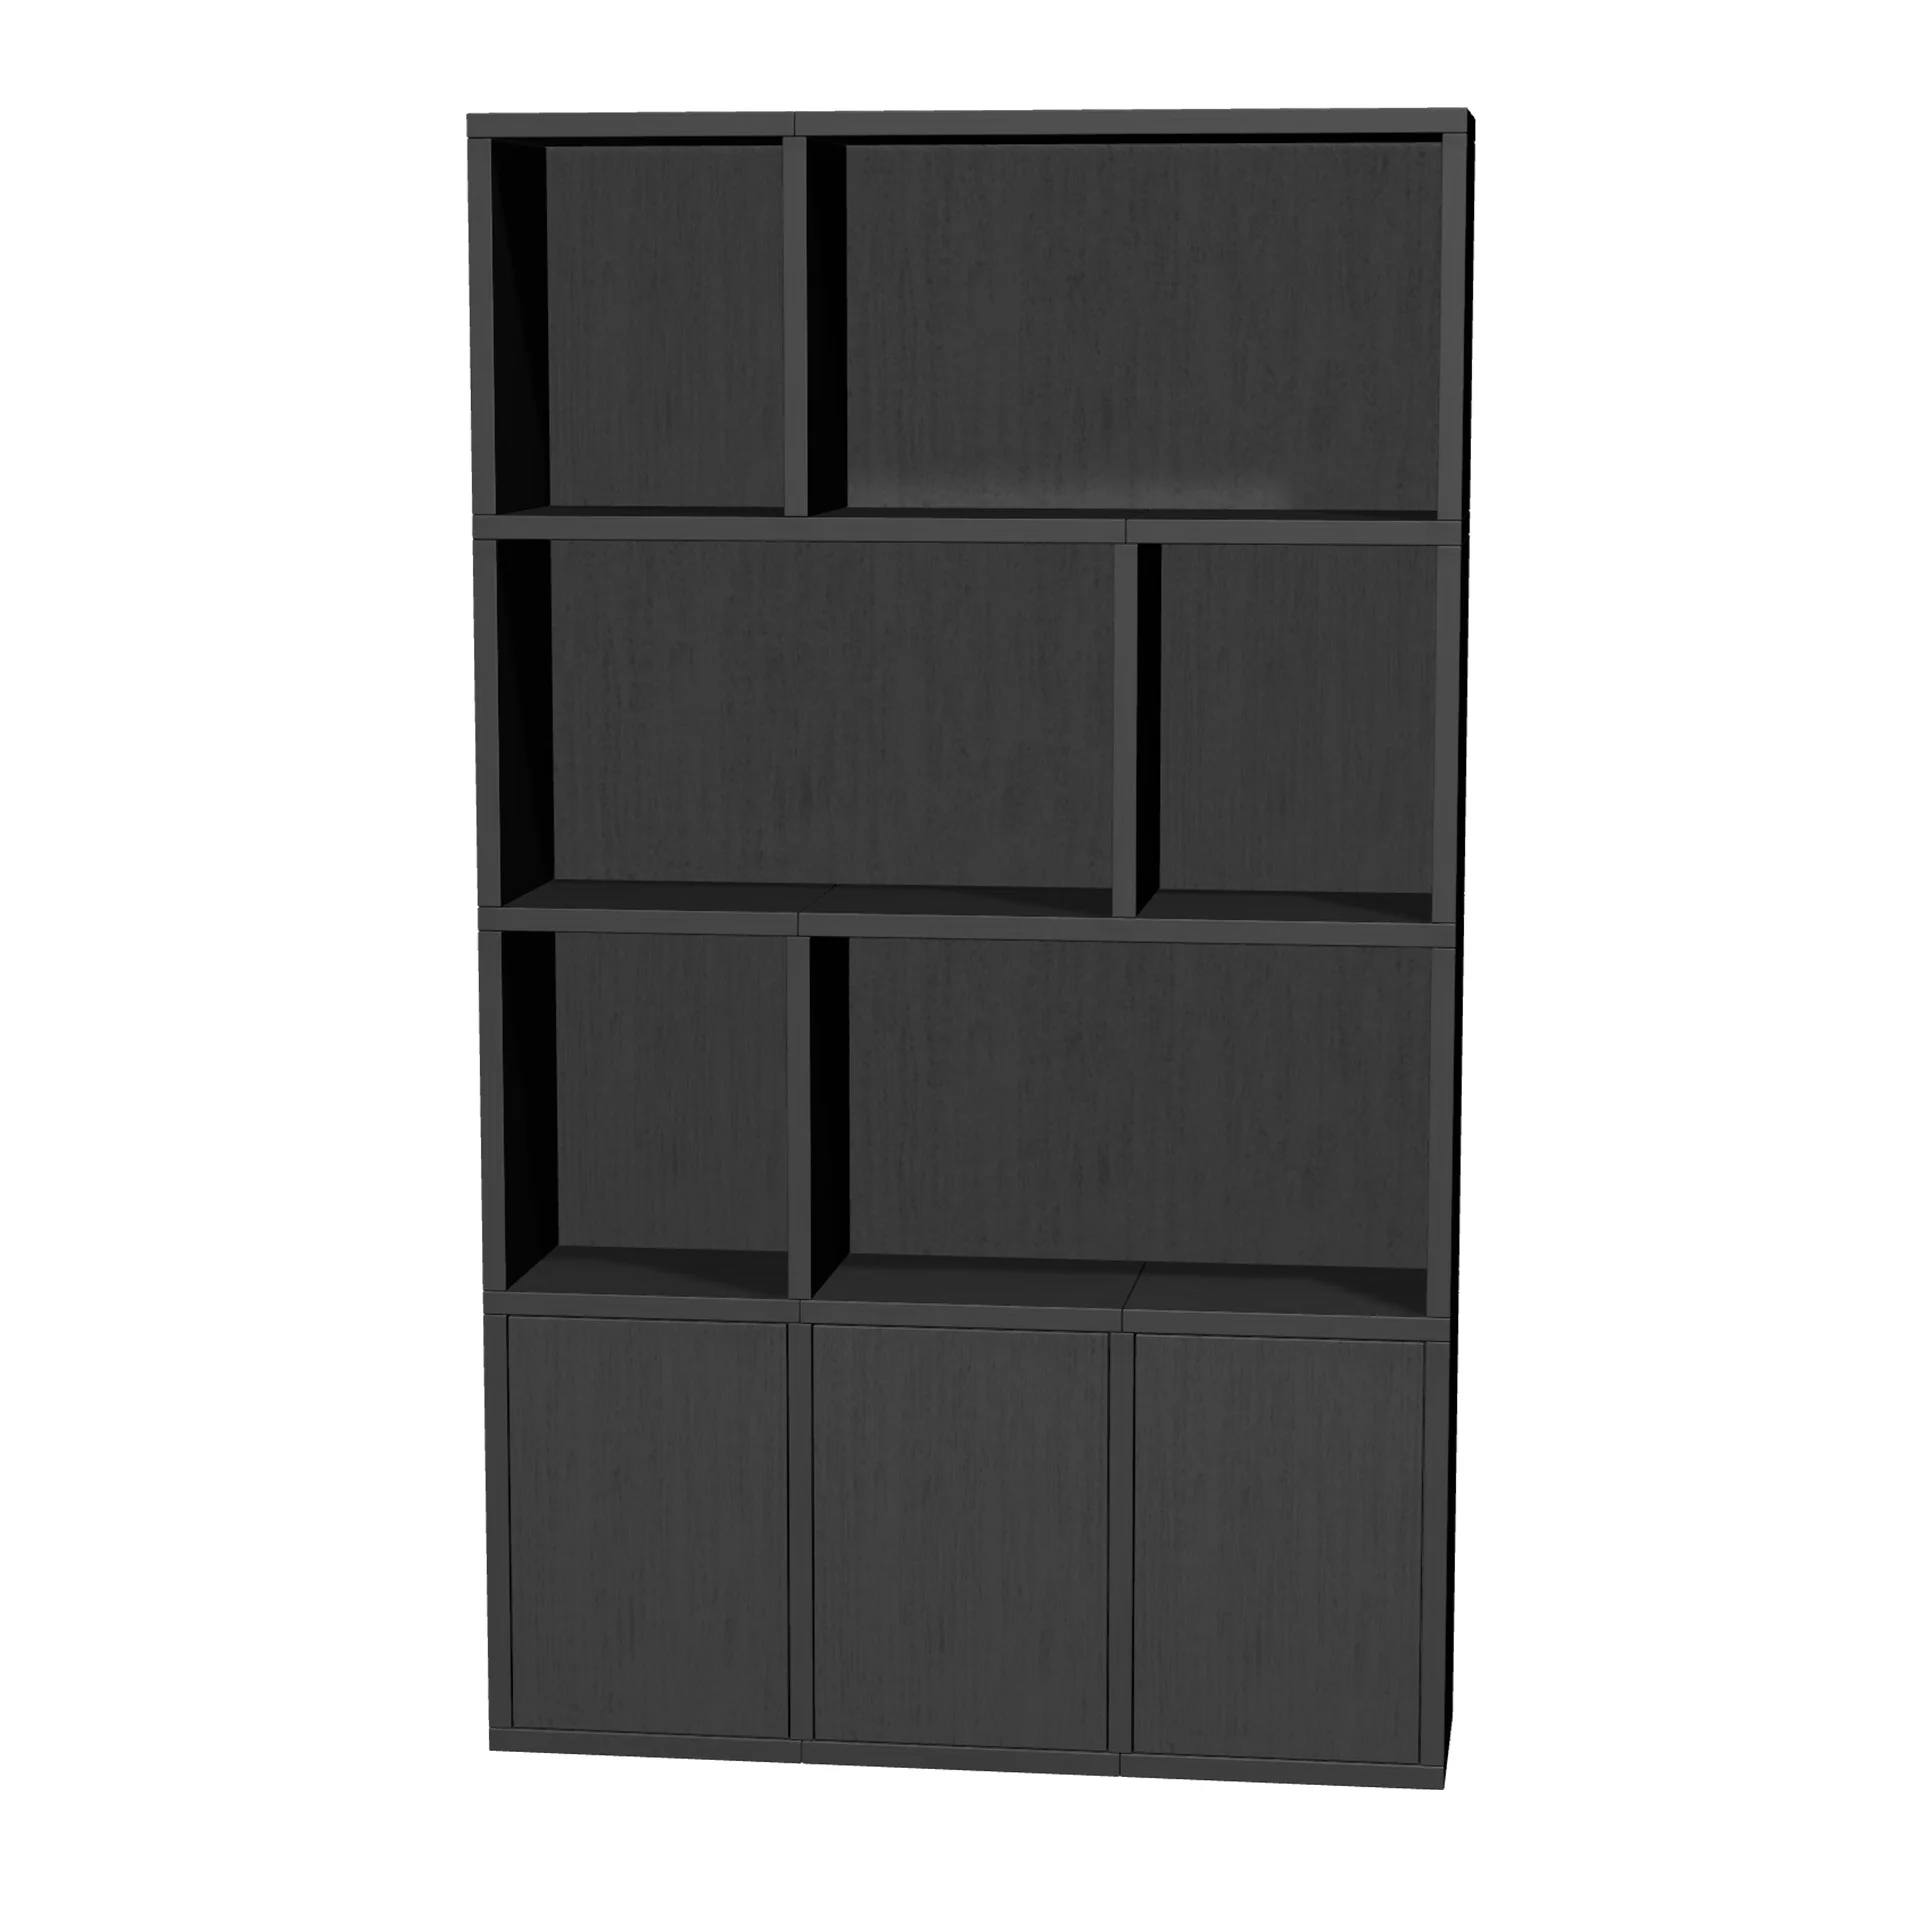 TSFC005 in black oak furniture board